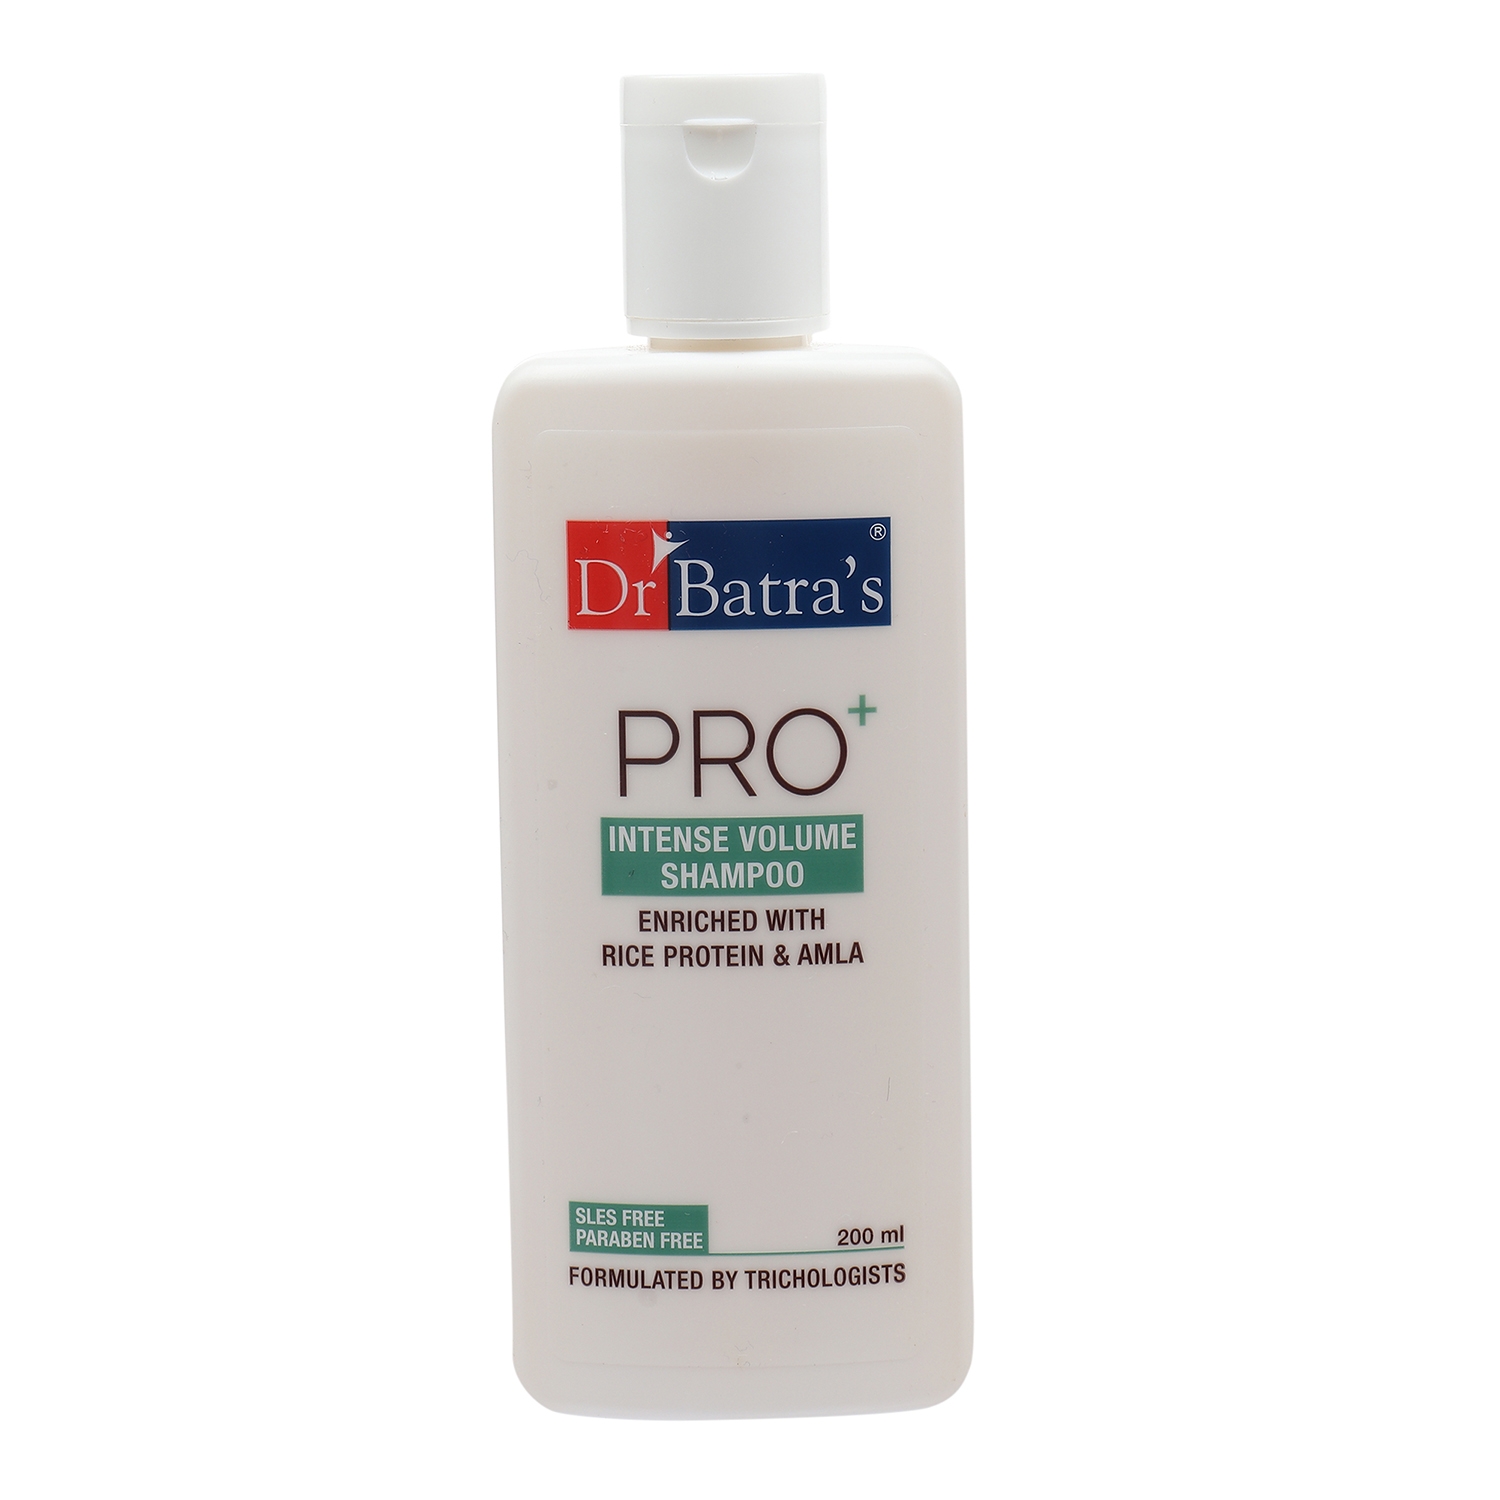 Dr Batra's | Dr Batra's Hair Vitalizing Serum 125 ml, Pro+ Intense Volume Shampoo - 200 ml and Hair Fall Control Oil- 200 ml         